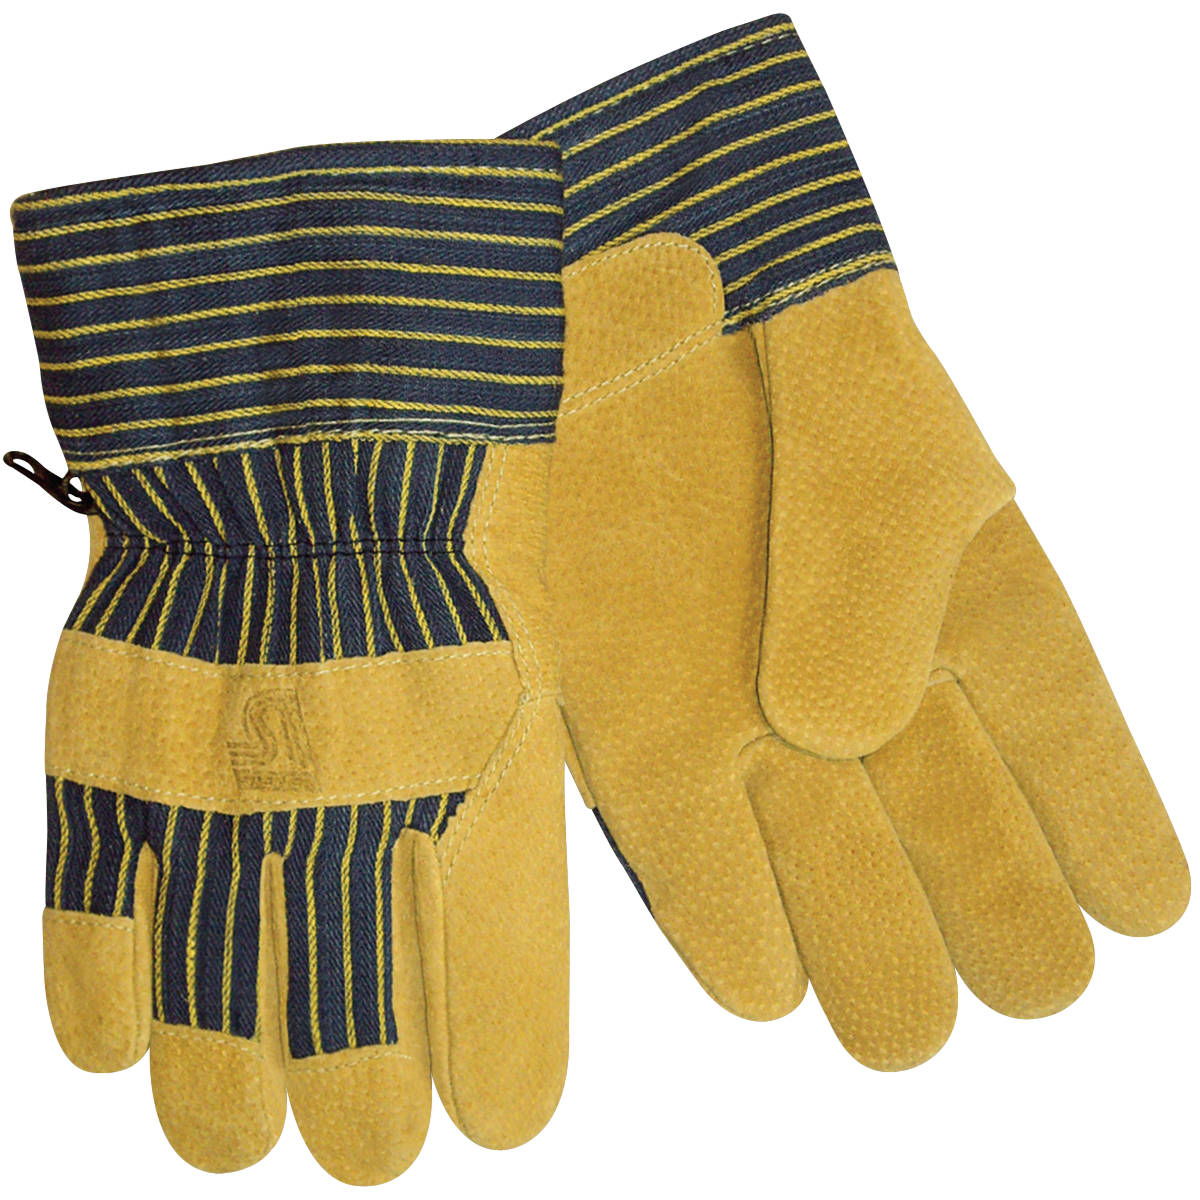 Download PNG image - Winter Gloves Transparent Images PNG 